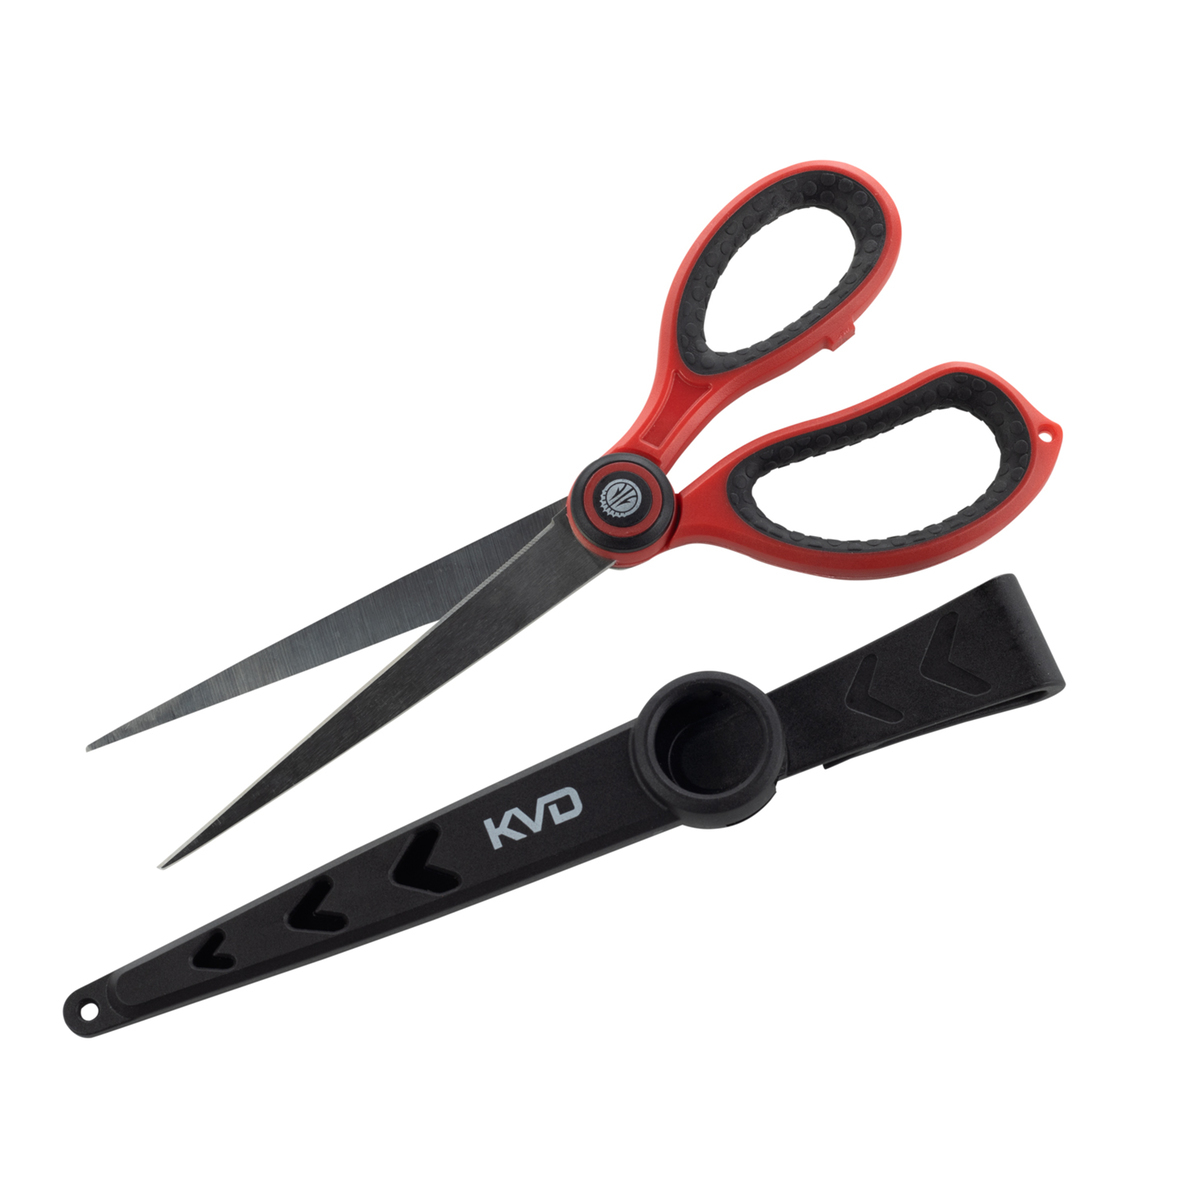 https://www.sportsmans.com/medias/kvd-precision-ultimate-angler-braid-scissors-p232945-1.jpg?context=bWFzdGVyfGltYWdlc3wyNTgwMDR8aW1hZ2UvanBlZ3xpbWFnZXMvaGVmL2hiNi85NTE4NTY2NTM5Mjk0LmpwZ3w0OGFiMzY2ZmMwYjBmYzNmYmNiZGEyMTJlYjU2OGU3NGE2MDYwOWE1ZGZmMGU3MGRmOWM0OTgwOGFhYjQ3YWUy